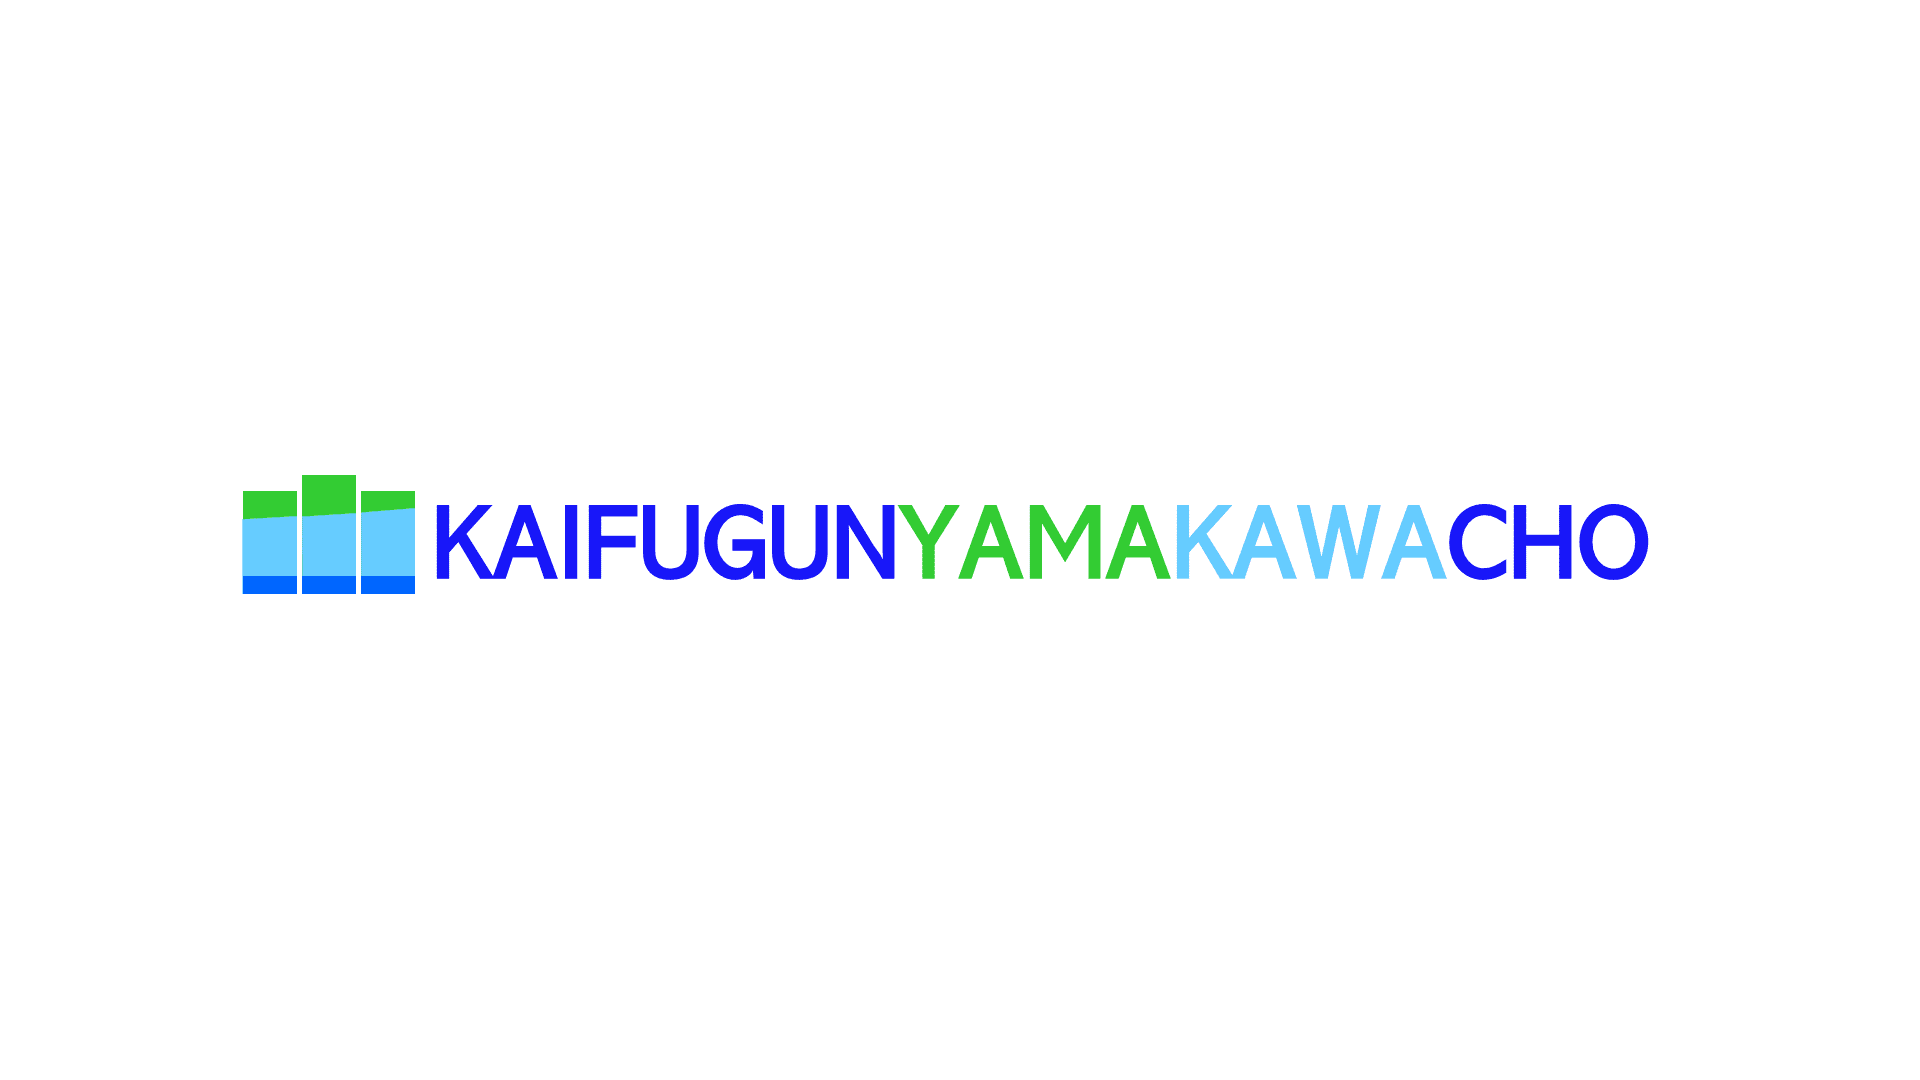 KAIFUGUNYAMAKAWACHO